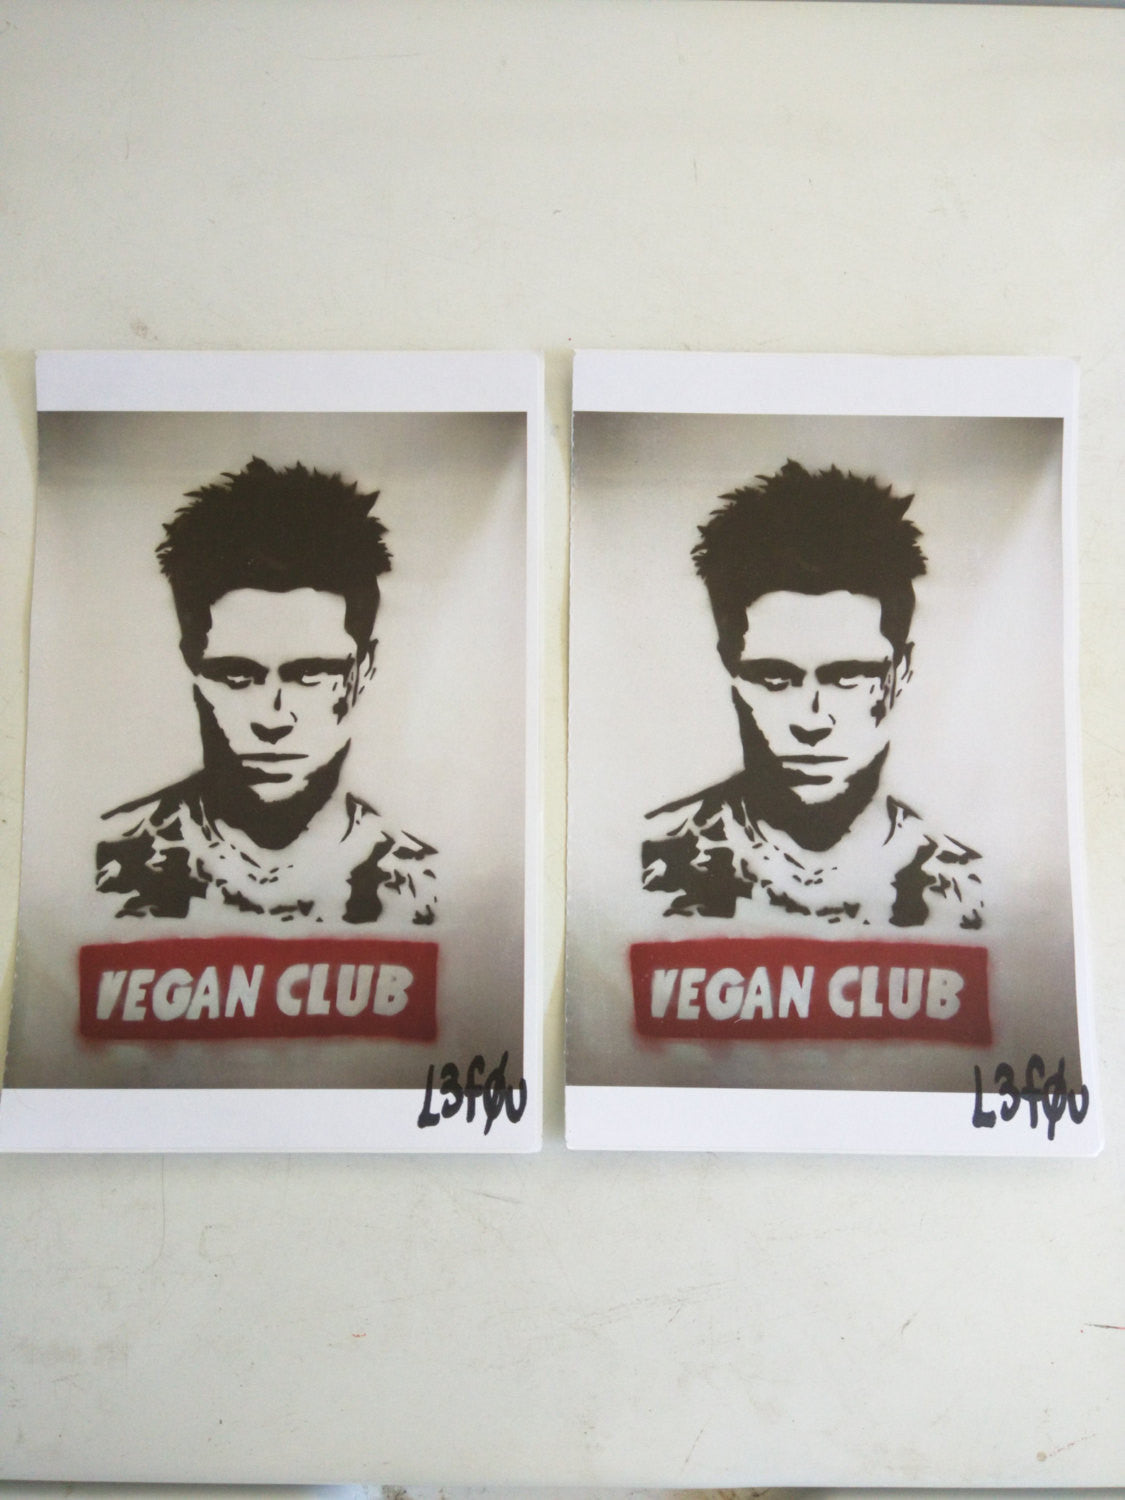 2 Vegan Club Stickers featuring Brad Pitt Autographed l3f0u 5.5" x 8.5"